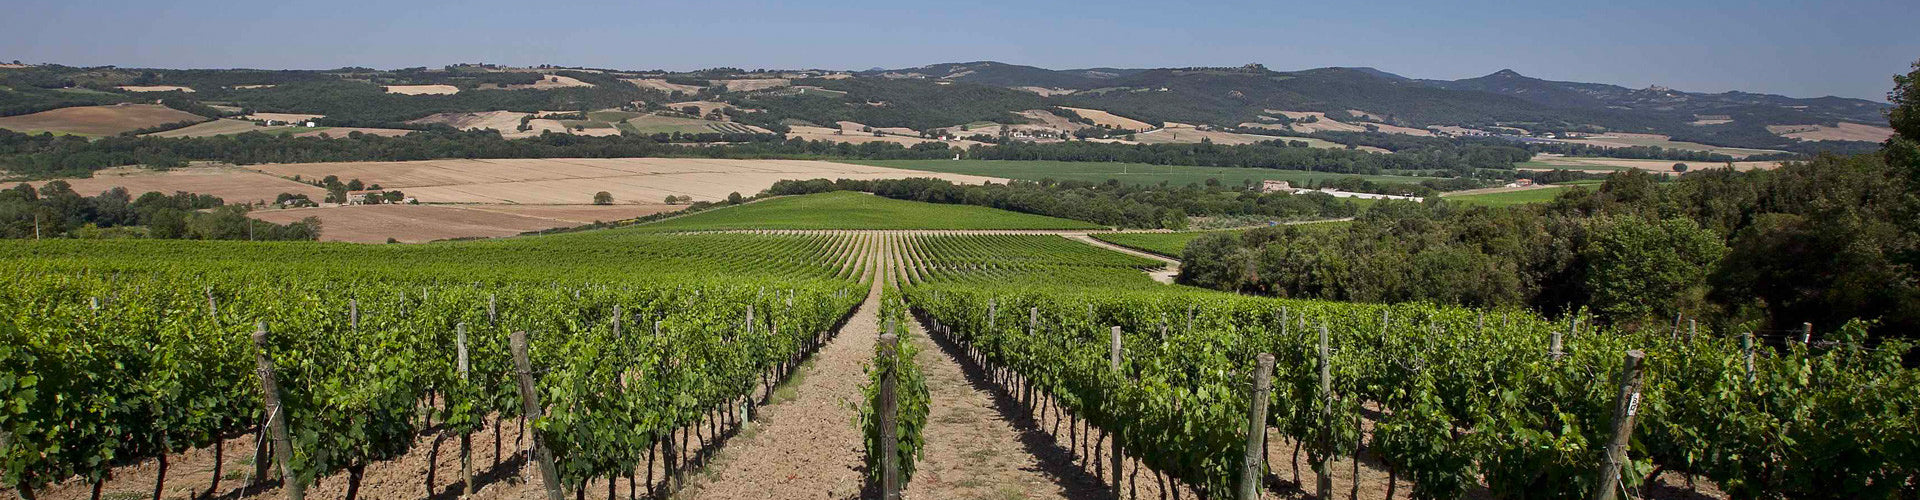 The vineyards of Antinori's Pian delle Vigne in Brunello di Montalcino